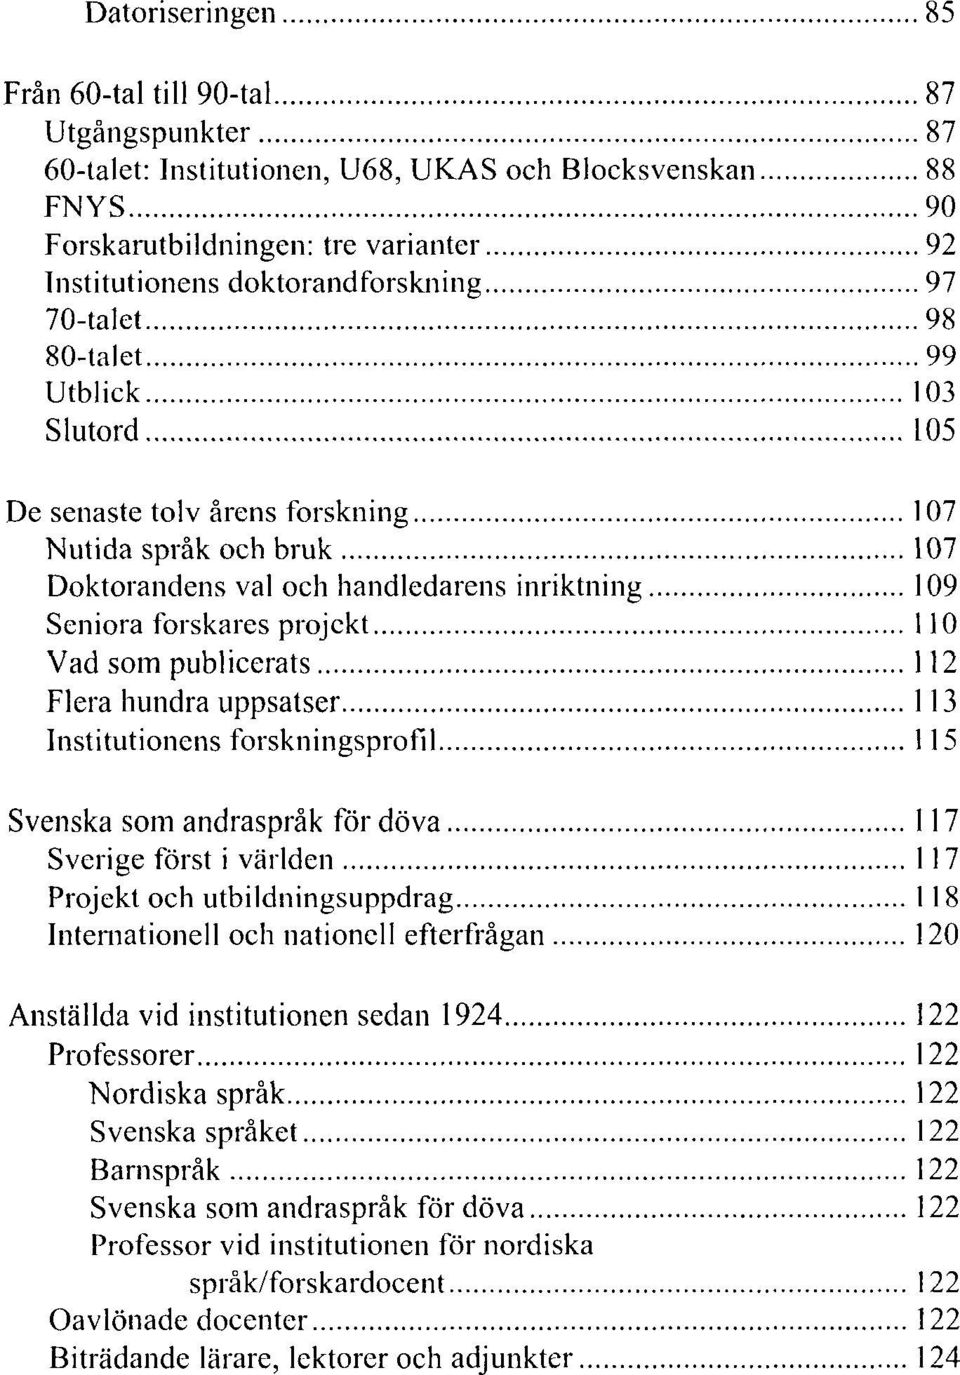 publicerats 112 Flera hundra uppsatser 113 Institutionens forskningsprofil 115 Svenska som andraspråk för döva 117 Sverige först i världen 117 Projekt och utbildningsuppdrag 118 Internationell och